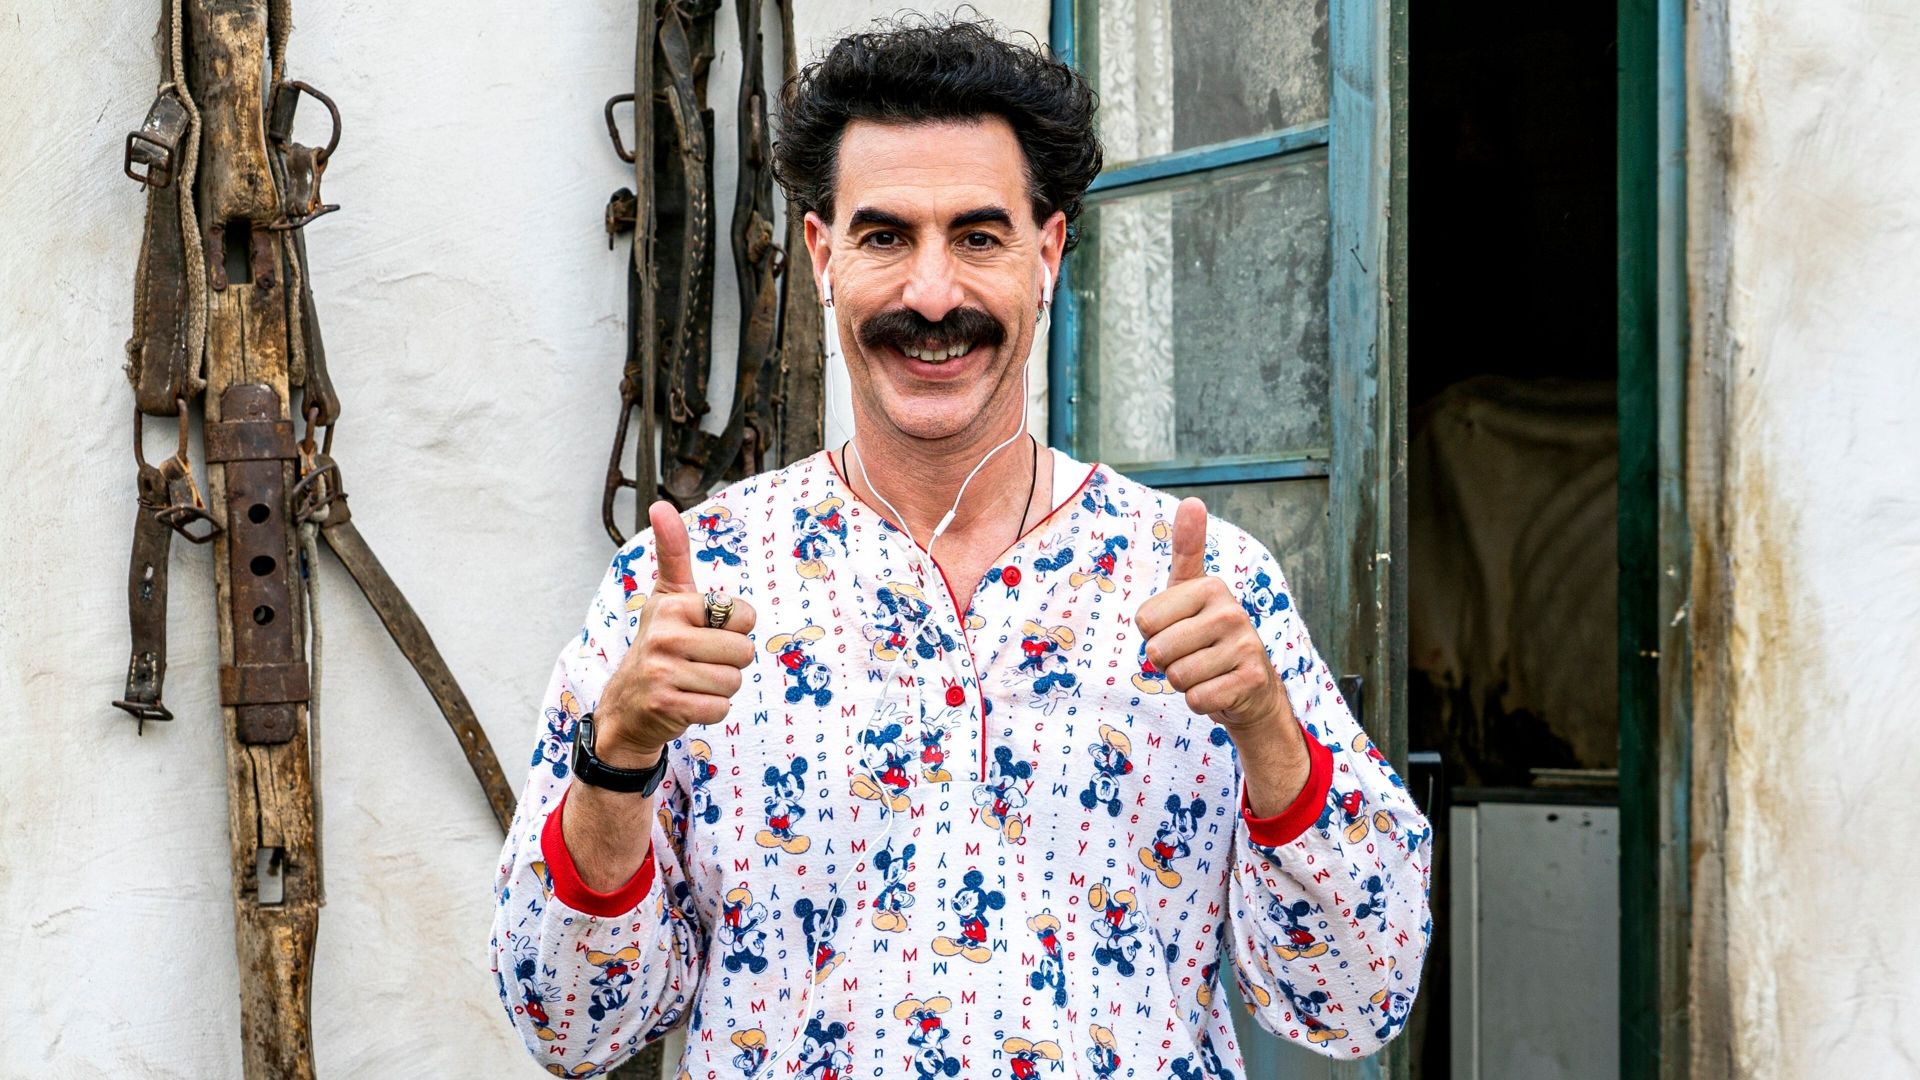 دانلود فیلم Borat Subsequent Moviefilm 2020